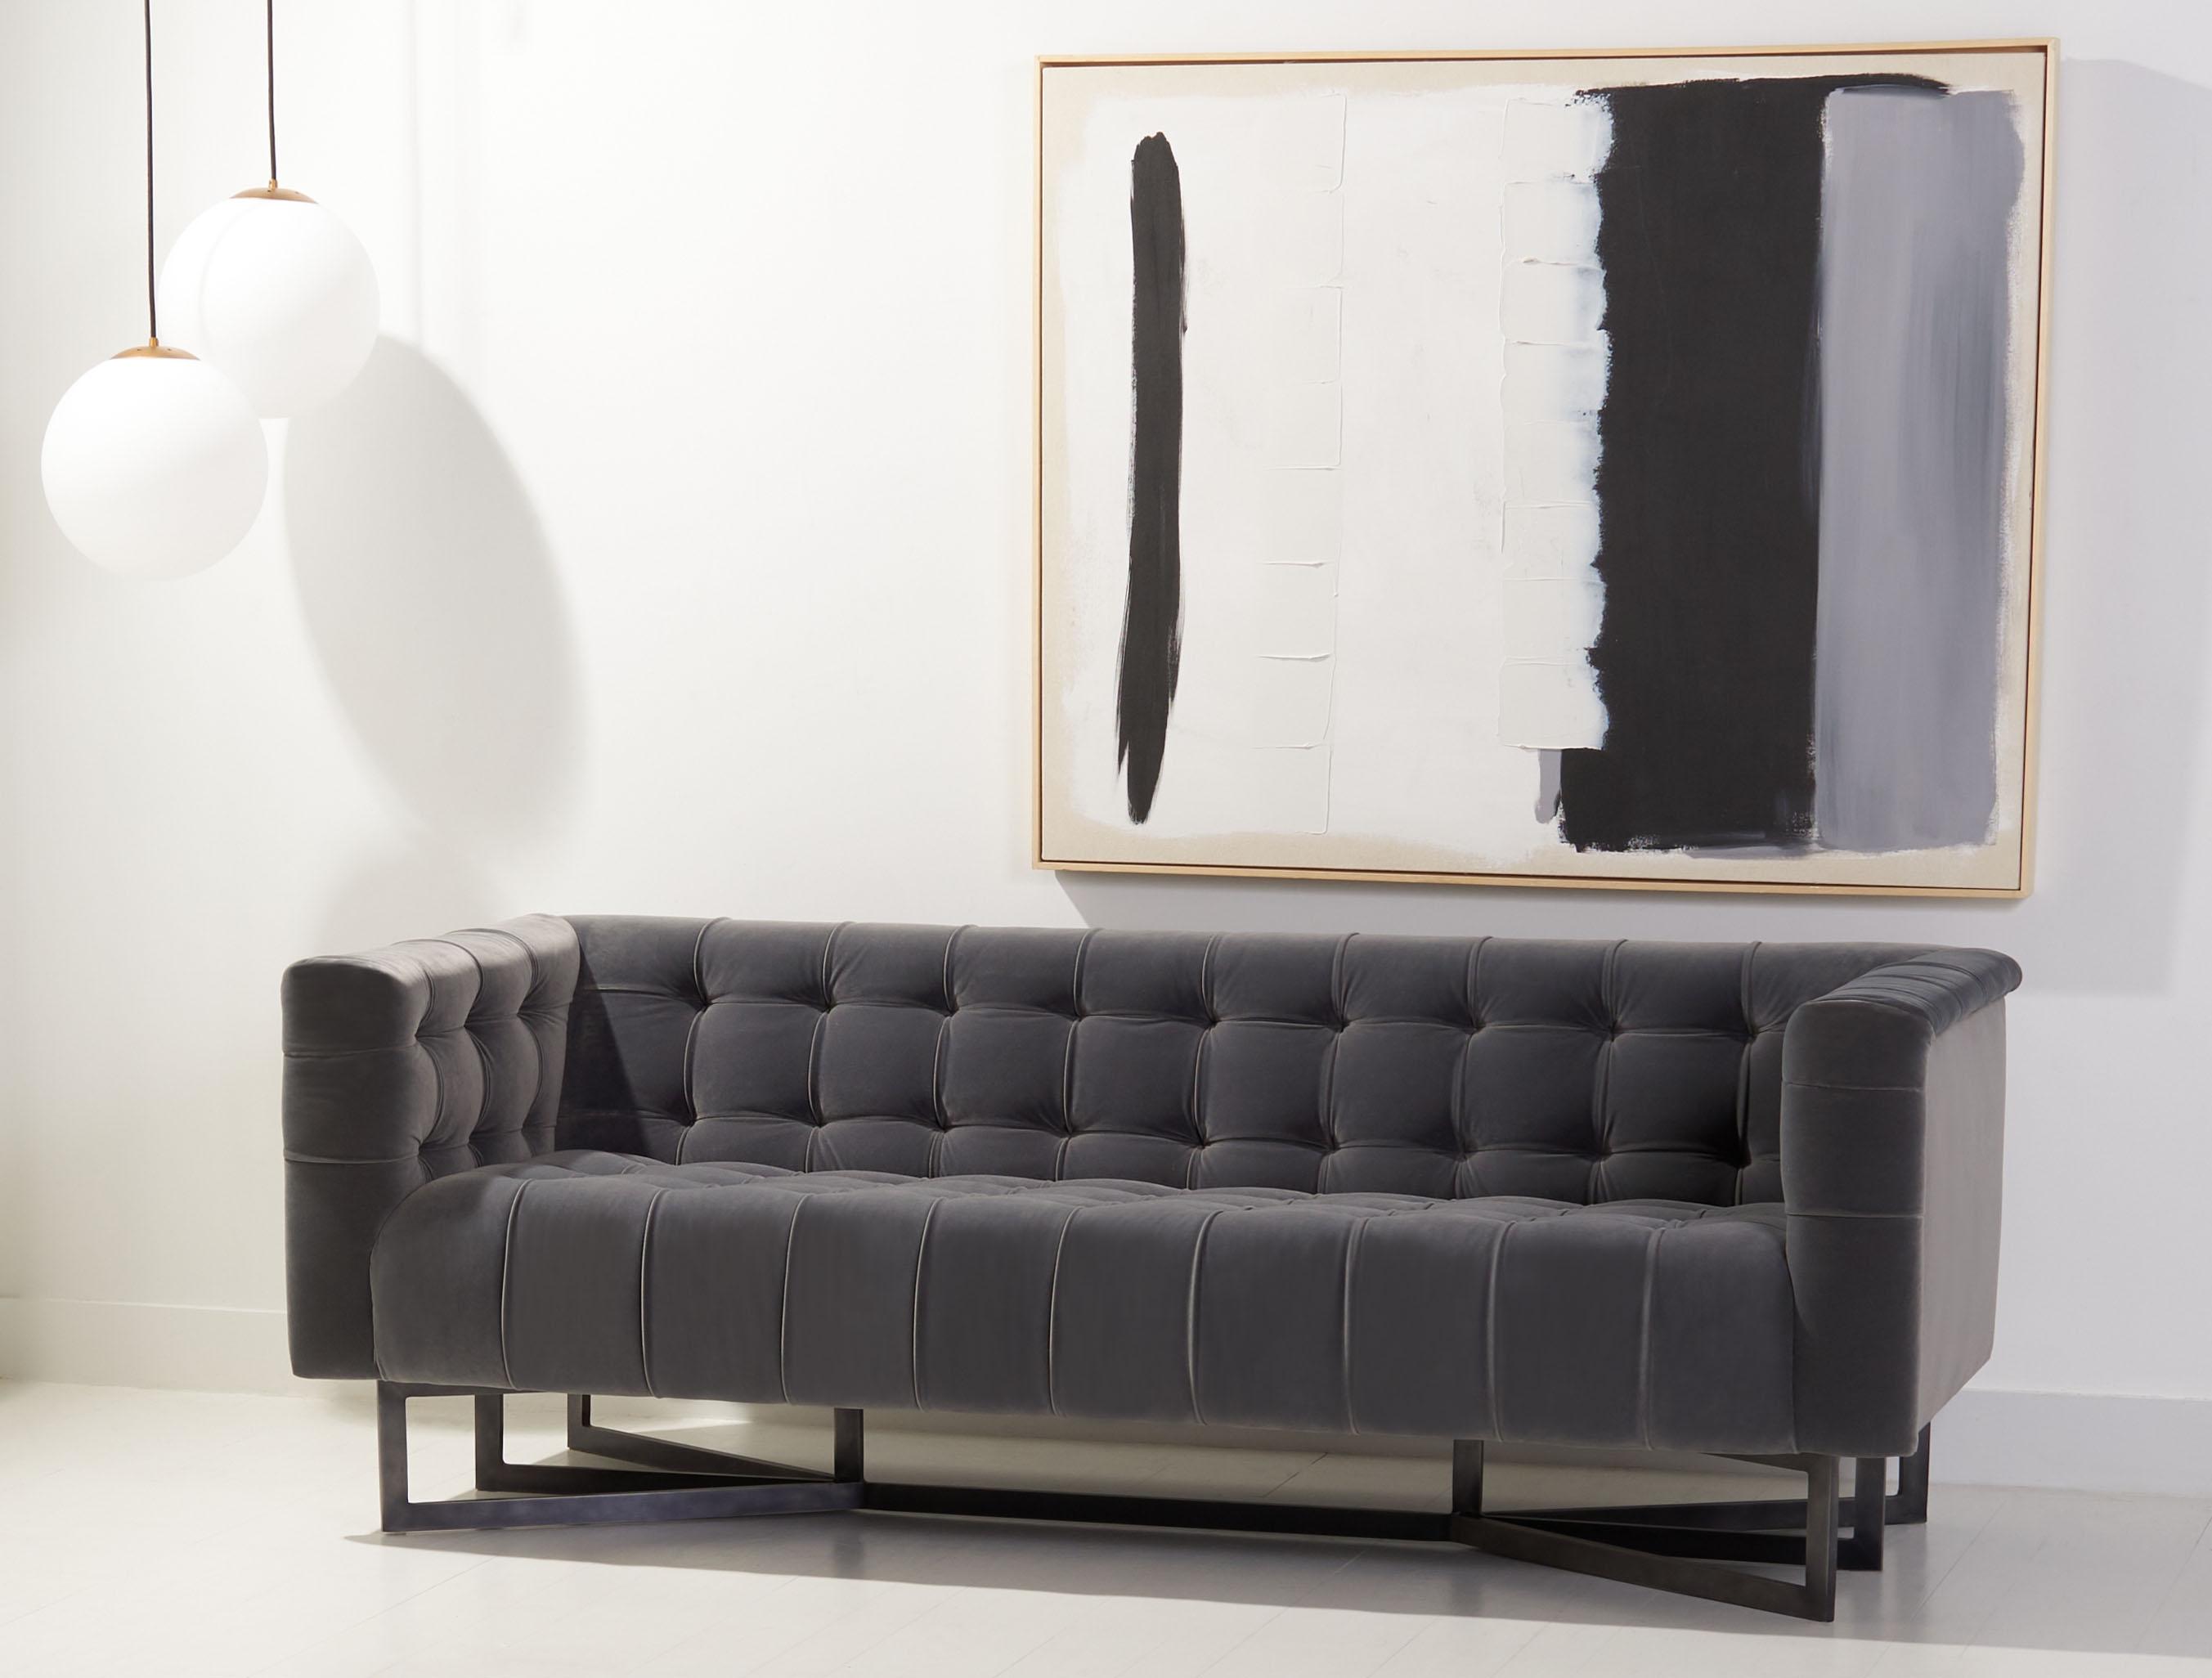 Myra Modern Tufted Sofa - Charcoal - Arlo Home - Image 1